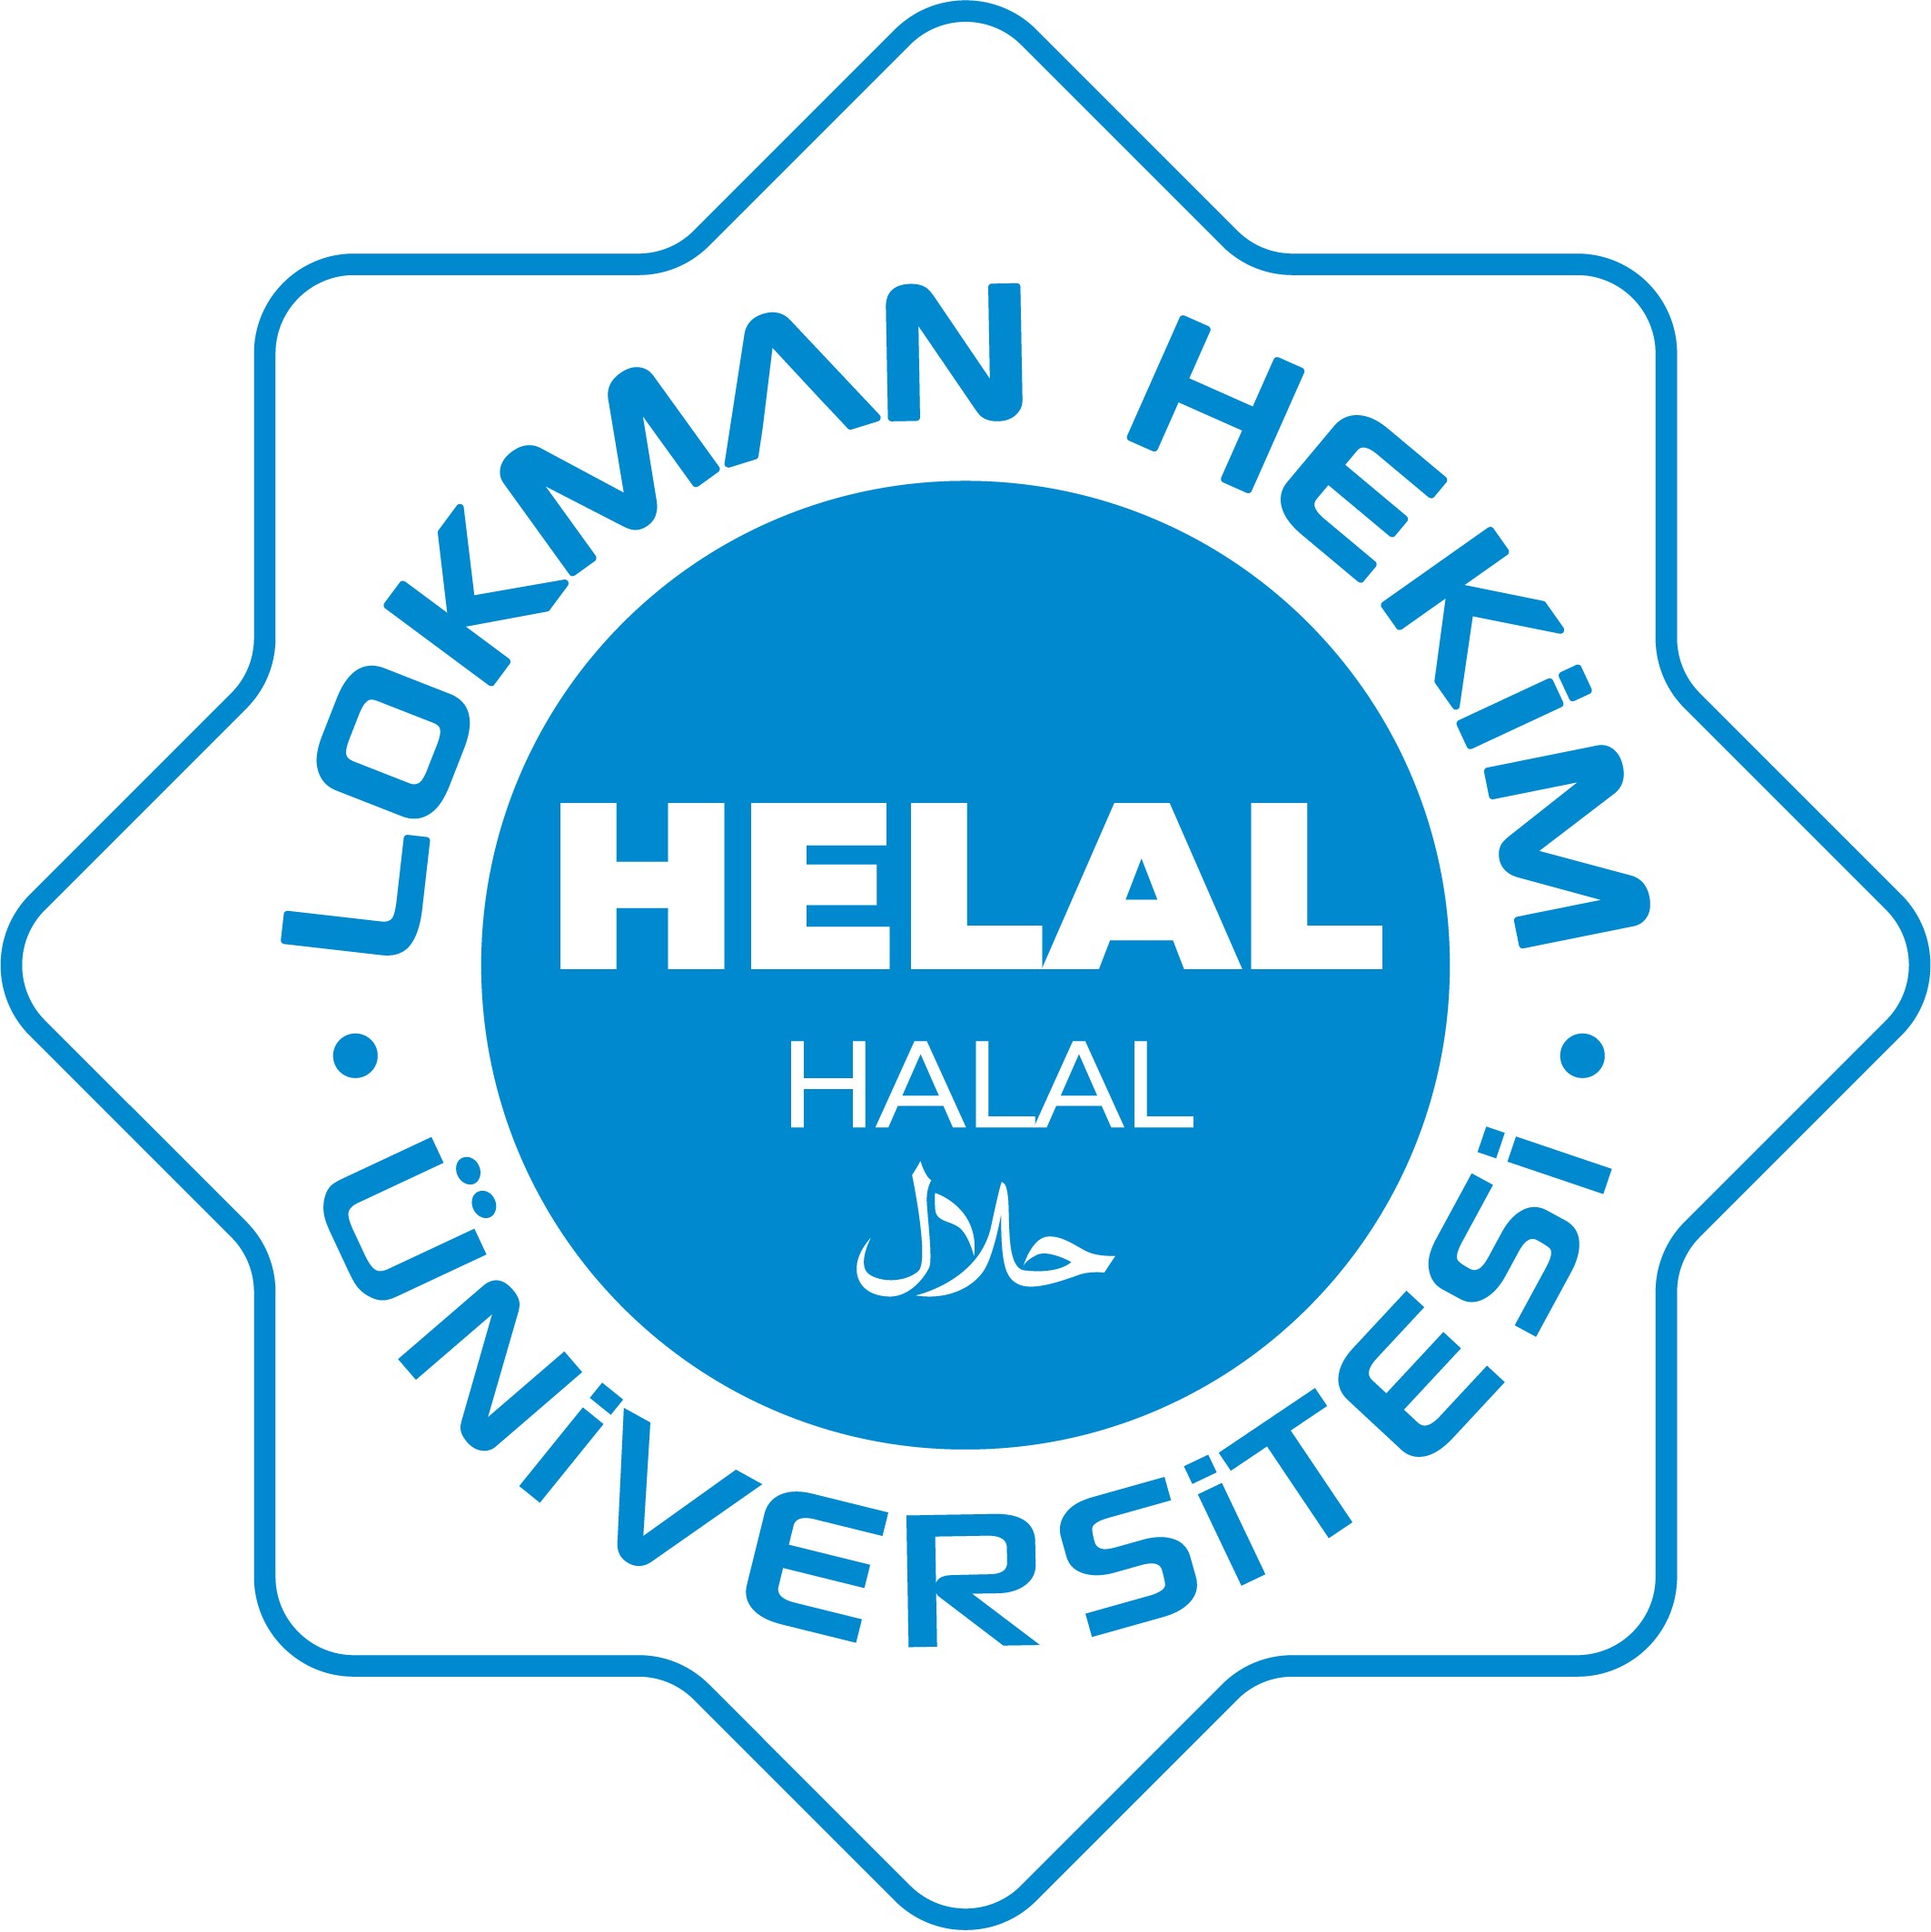 Helal Ürün Geliştirme Yüksek Lisans Programı Türkiye'de İlk Olarak Lokman Hekim Üniversitesi'nde Açıldı